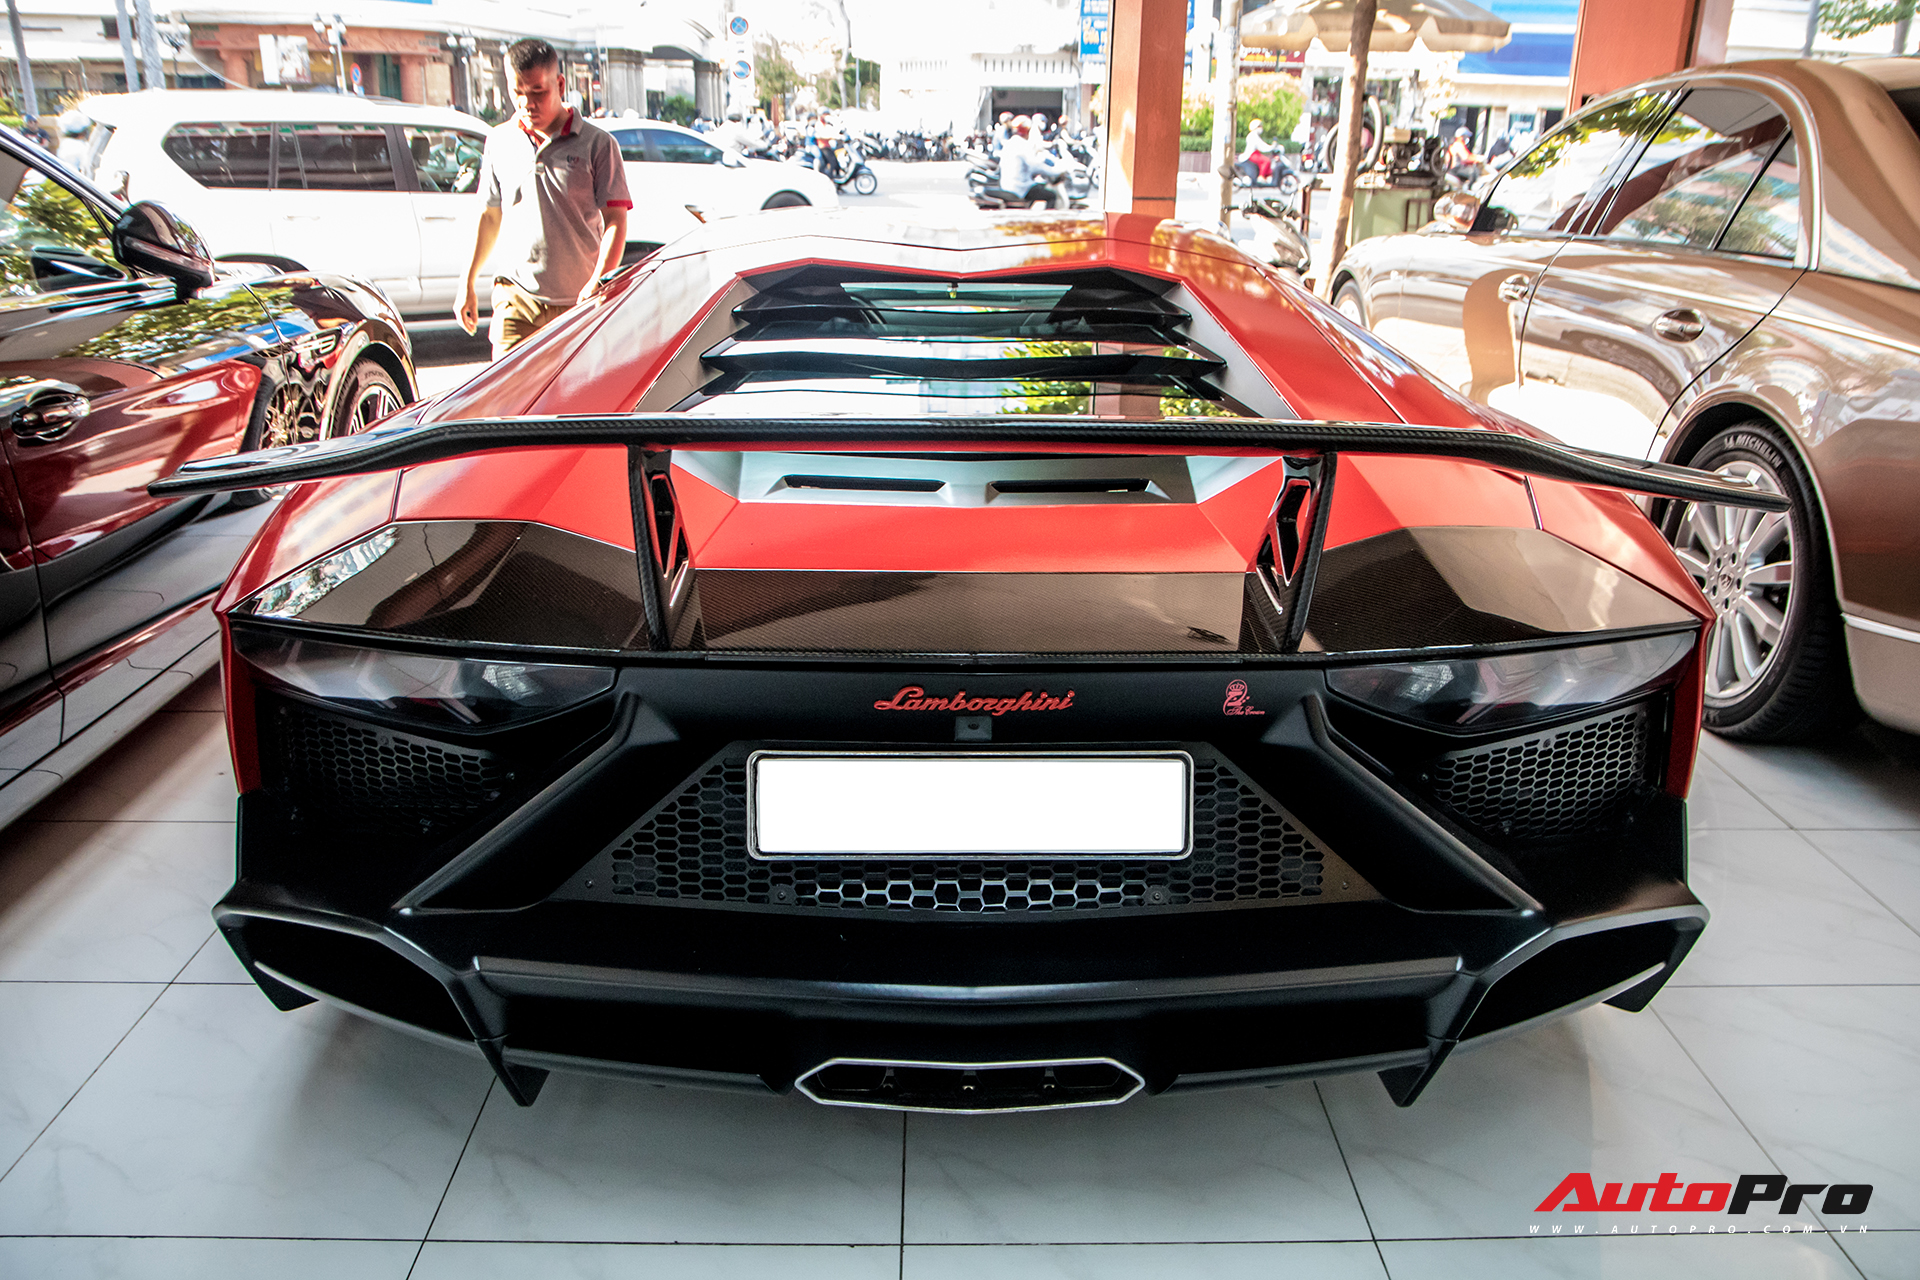 Thực hư chuyện Lamborghini Aventador độ bản 50 năm của đại gia Bạc Liêu bán lại cho showroom siêu xe lừng danh Sài Gòn - Ảnh 2.